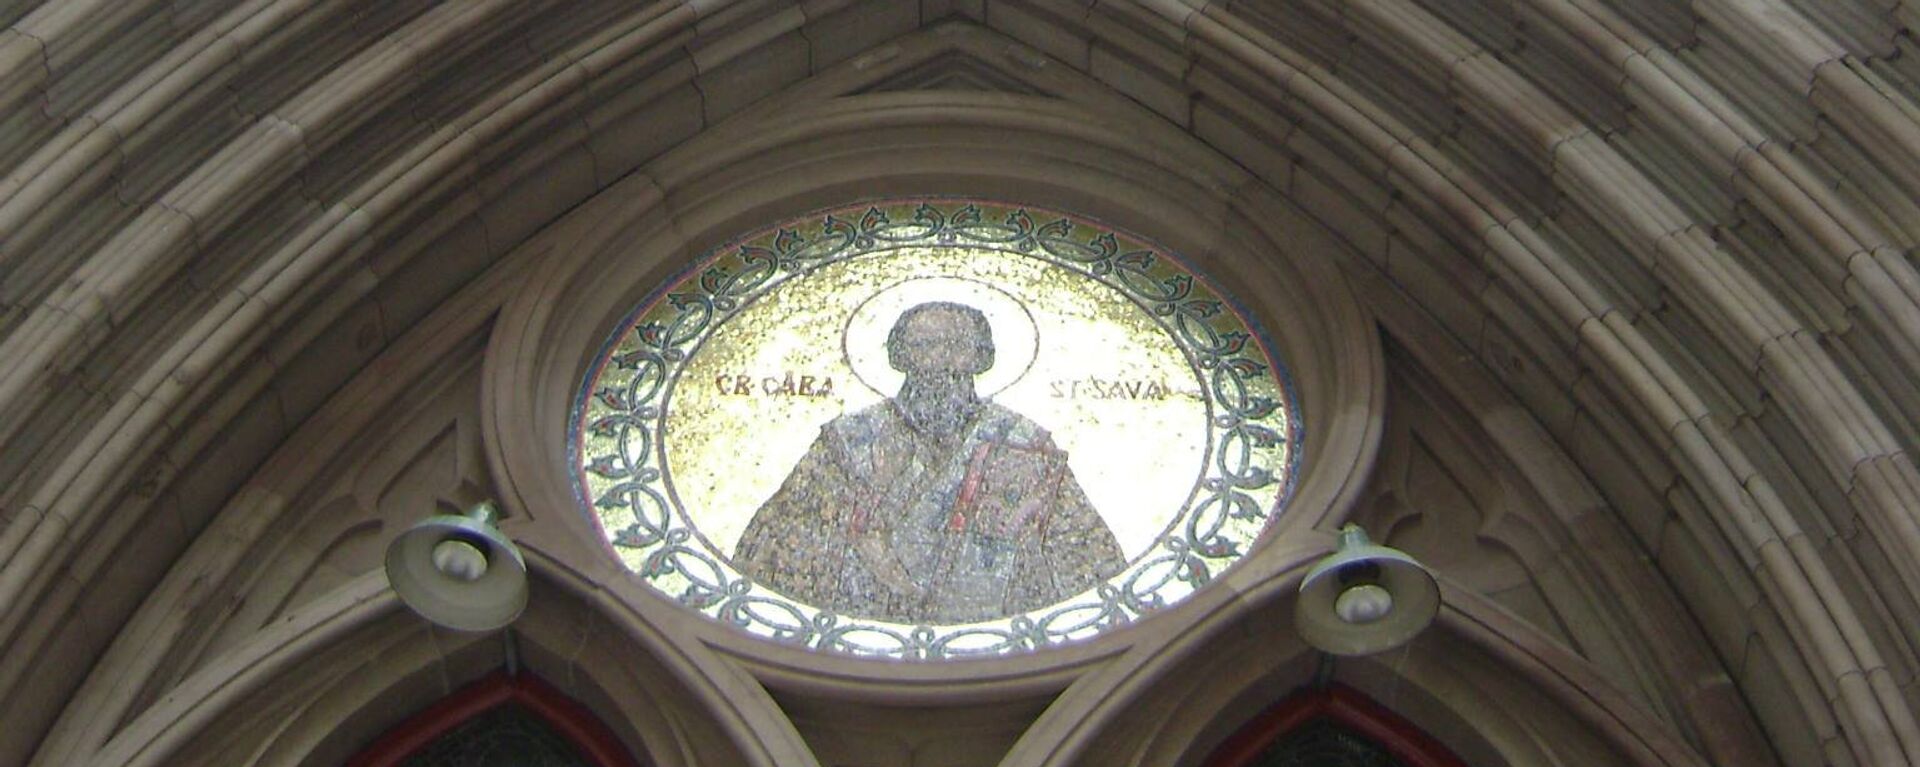 Икона Светог Саве изнад улаза у цркву - Sputnik Србија, 1920, 15.09.2021